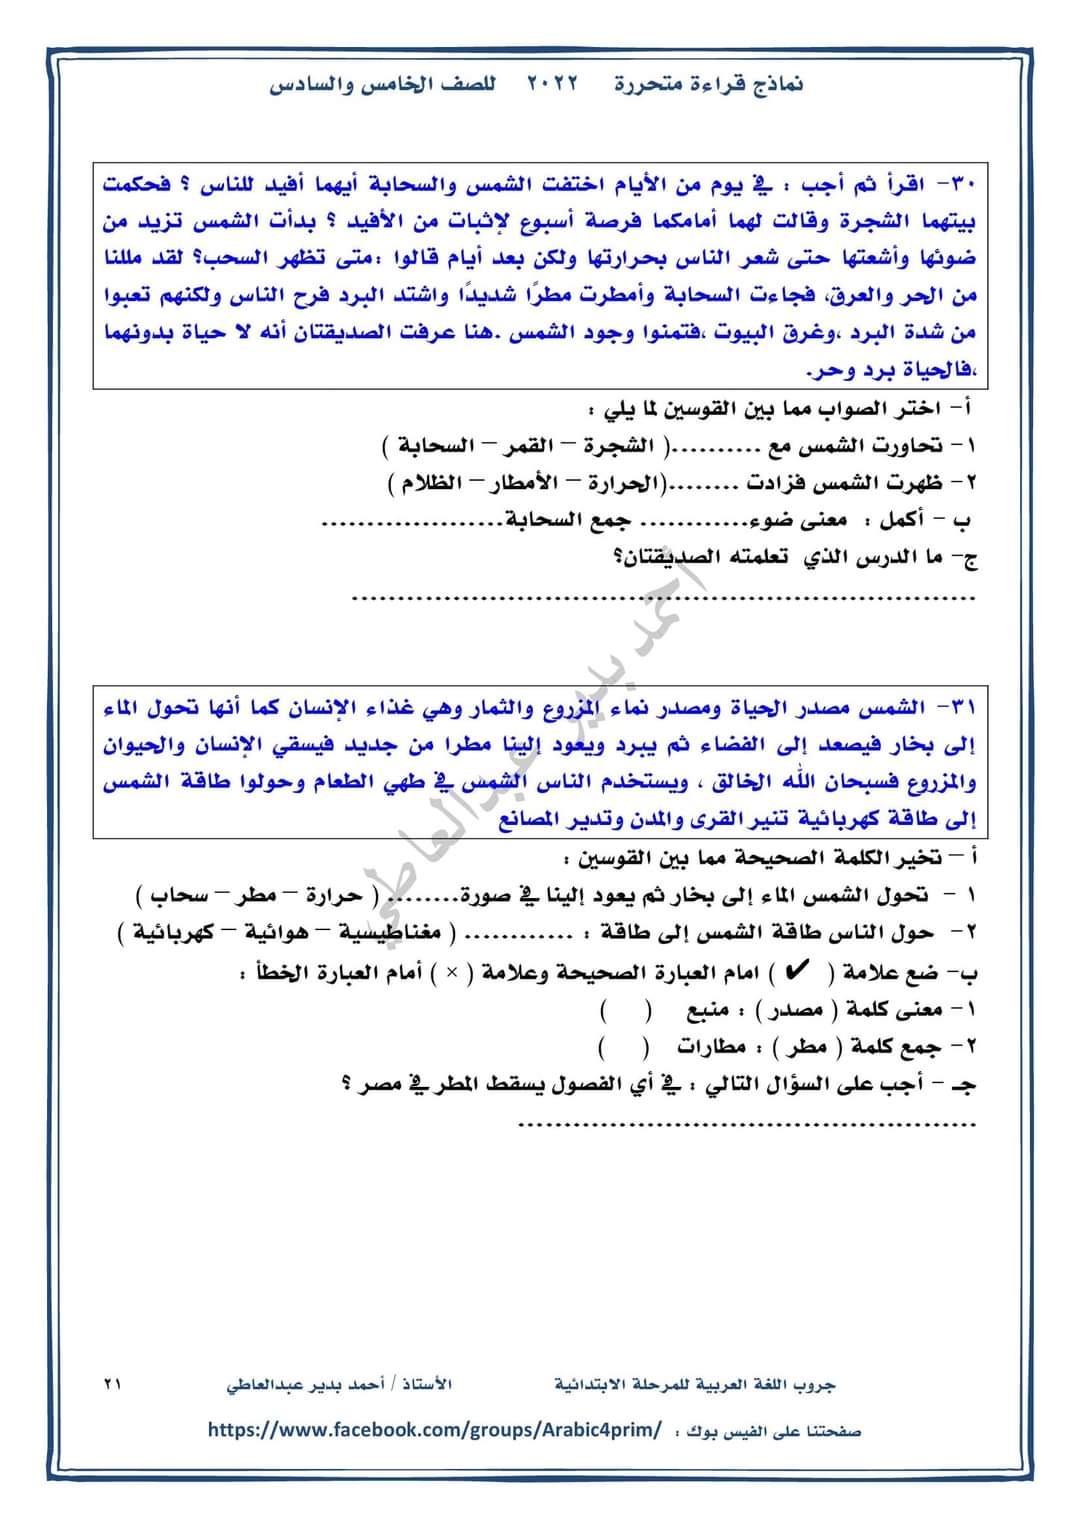 نماذج قراءة متحررة للصف الخامس والسادس الابتدائي - احمد بدير عبد العاطي